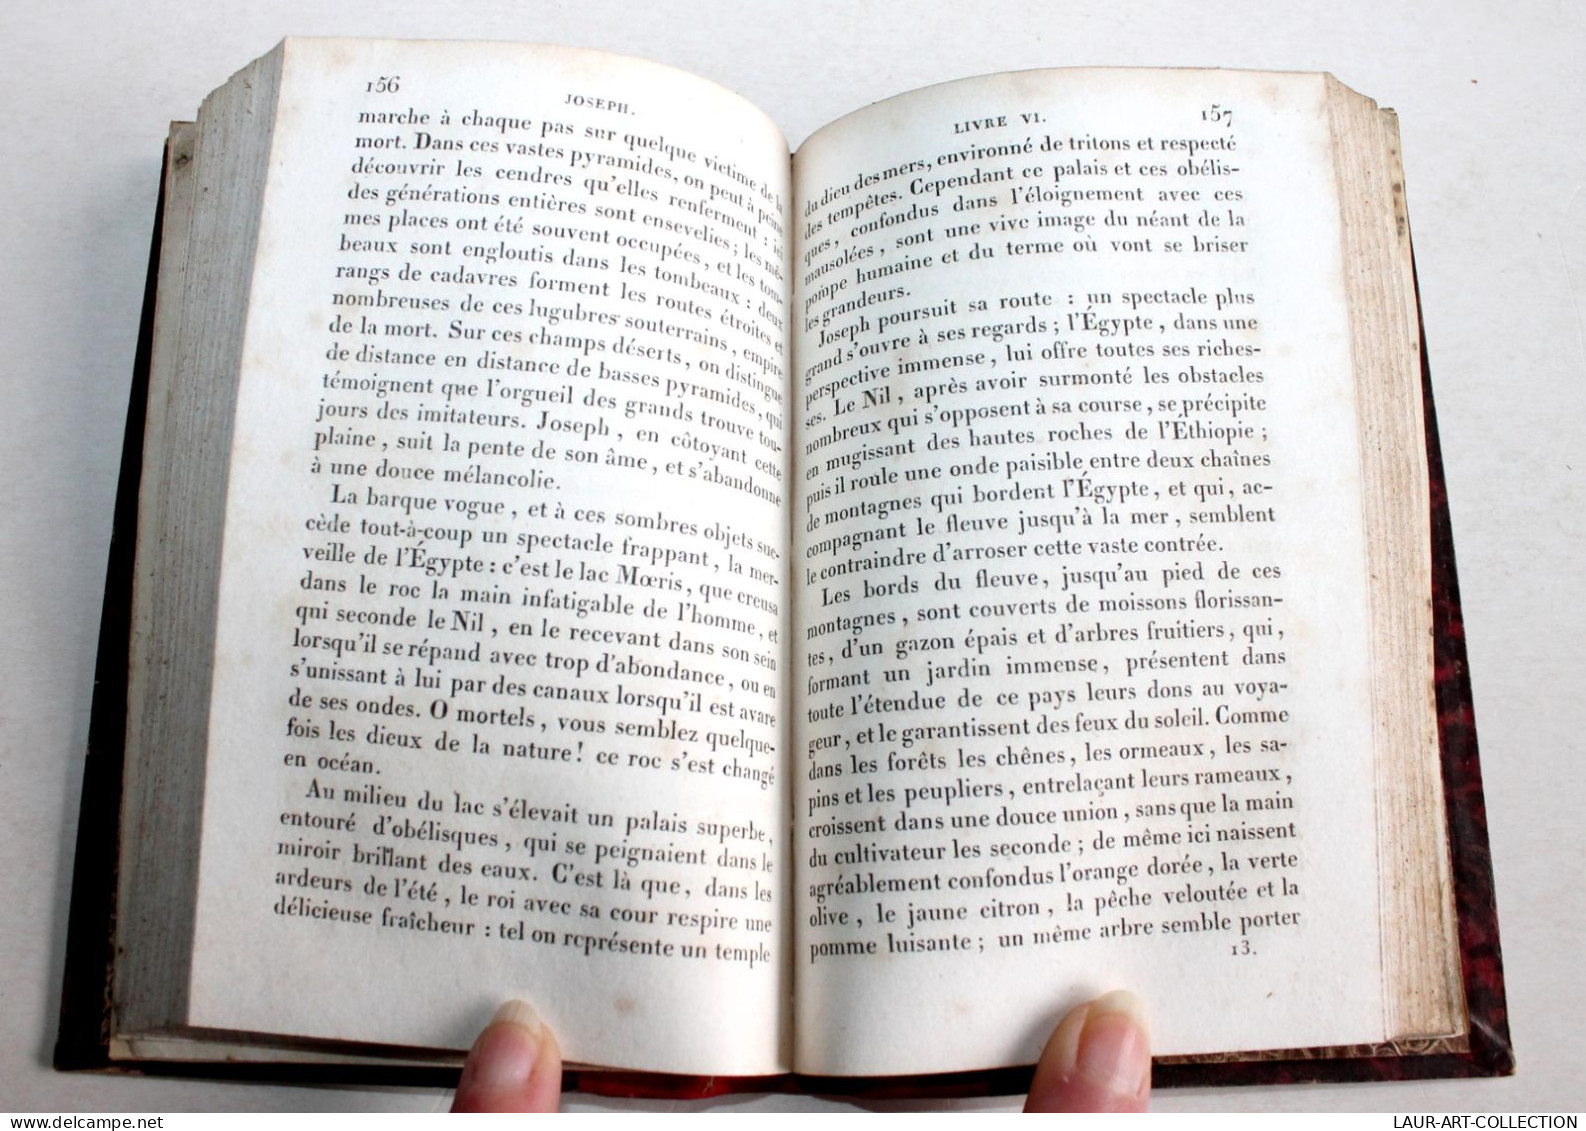 JOSEPH, POEME Par BITAUBE 1830 BUREAU DES EDITEURS / ANCIEN LIVRE DE POESIE XIXe SIECLE (1803.121) - Franse Schrijvers